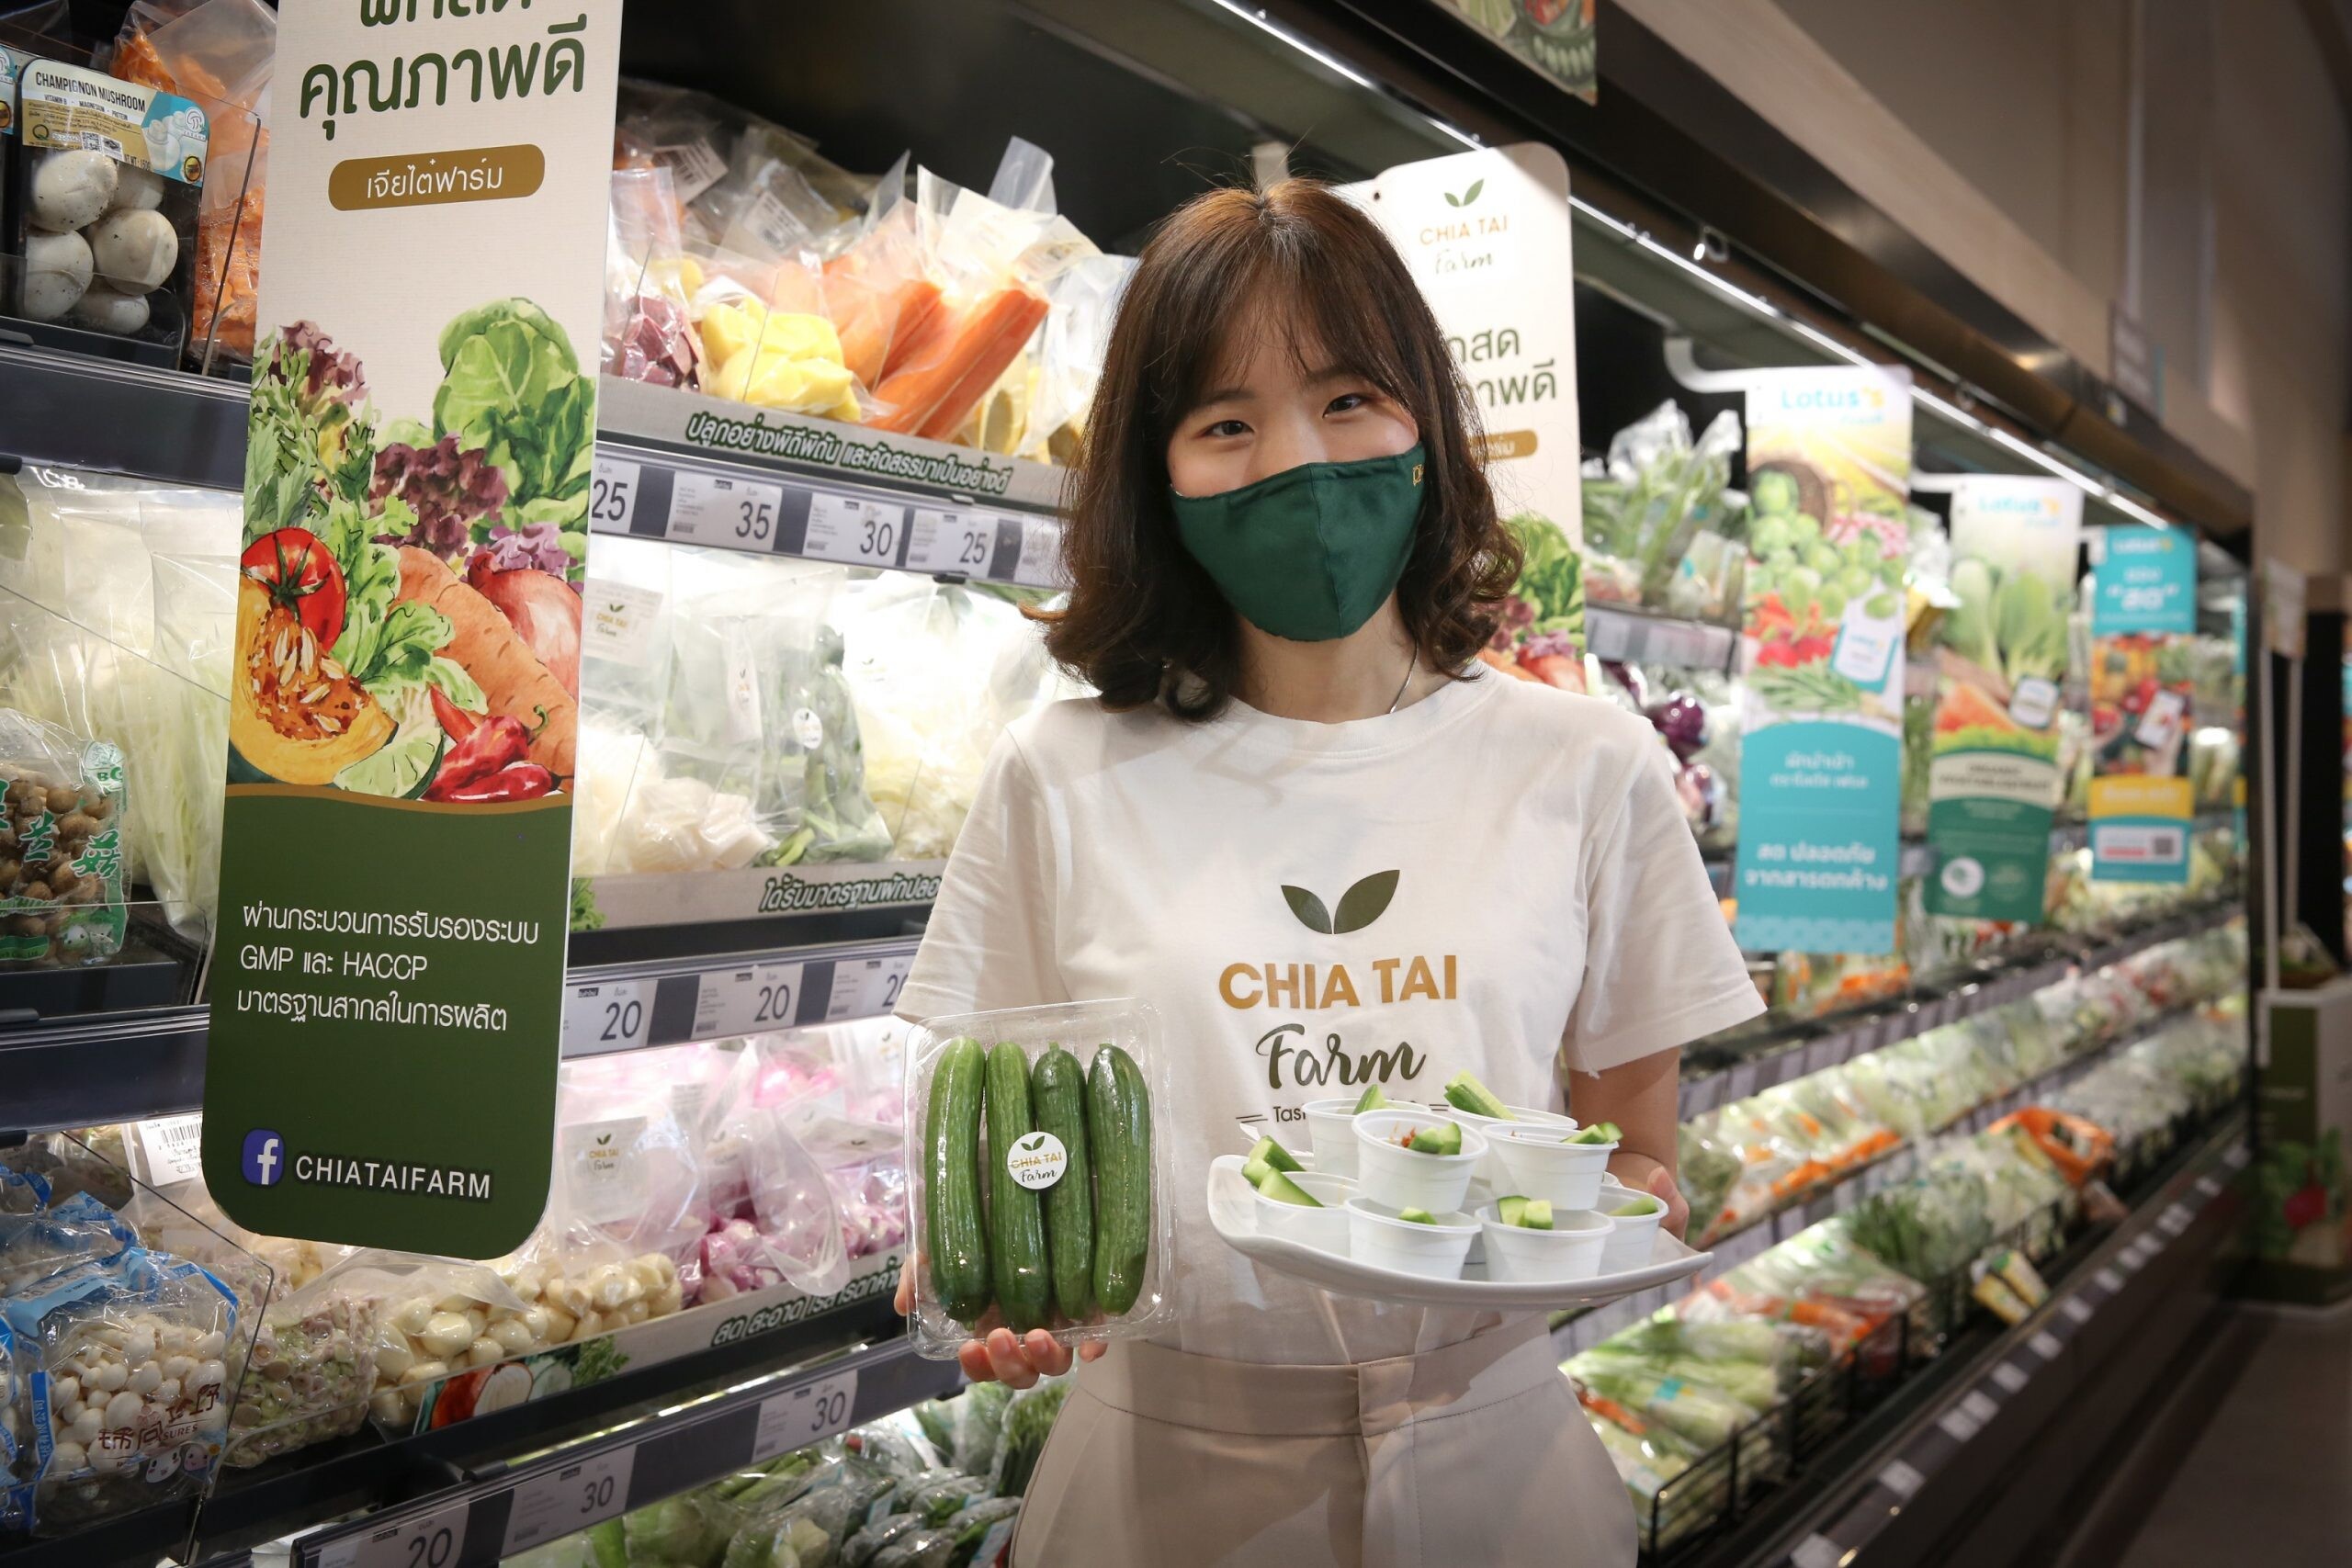 Enjoy Delectable Taste of Chia Tai Farm's MinicukeLisa Cucumbers